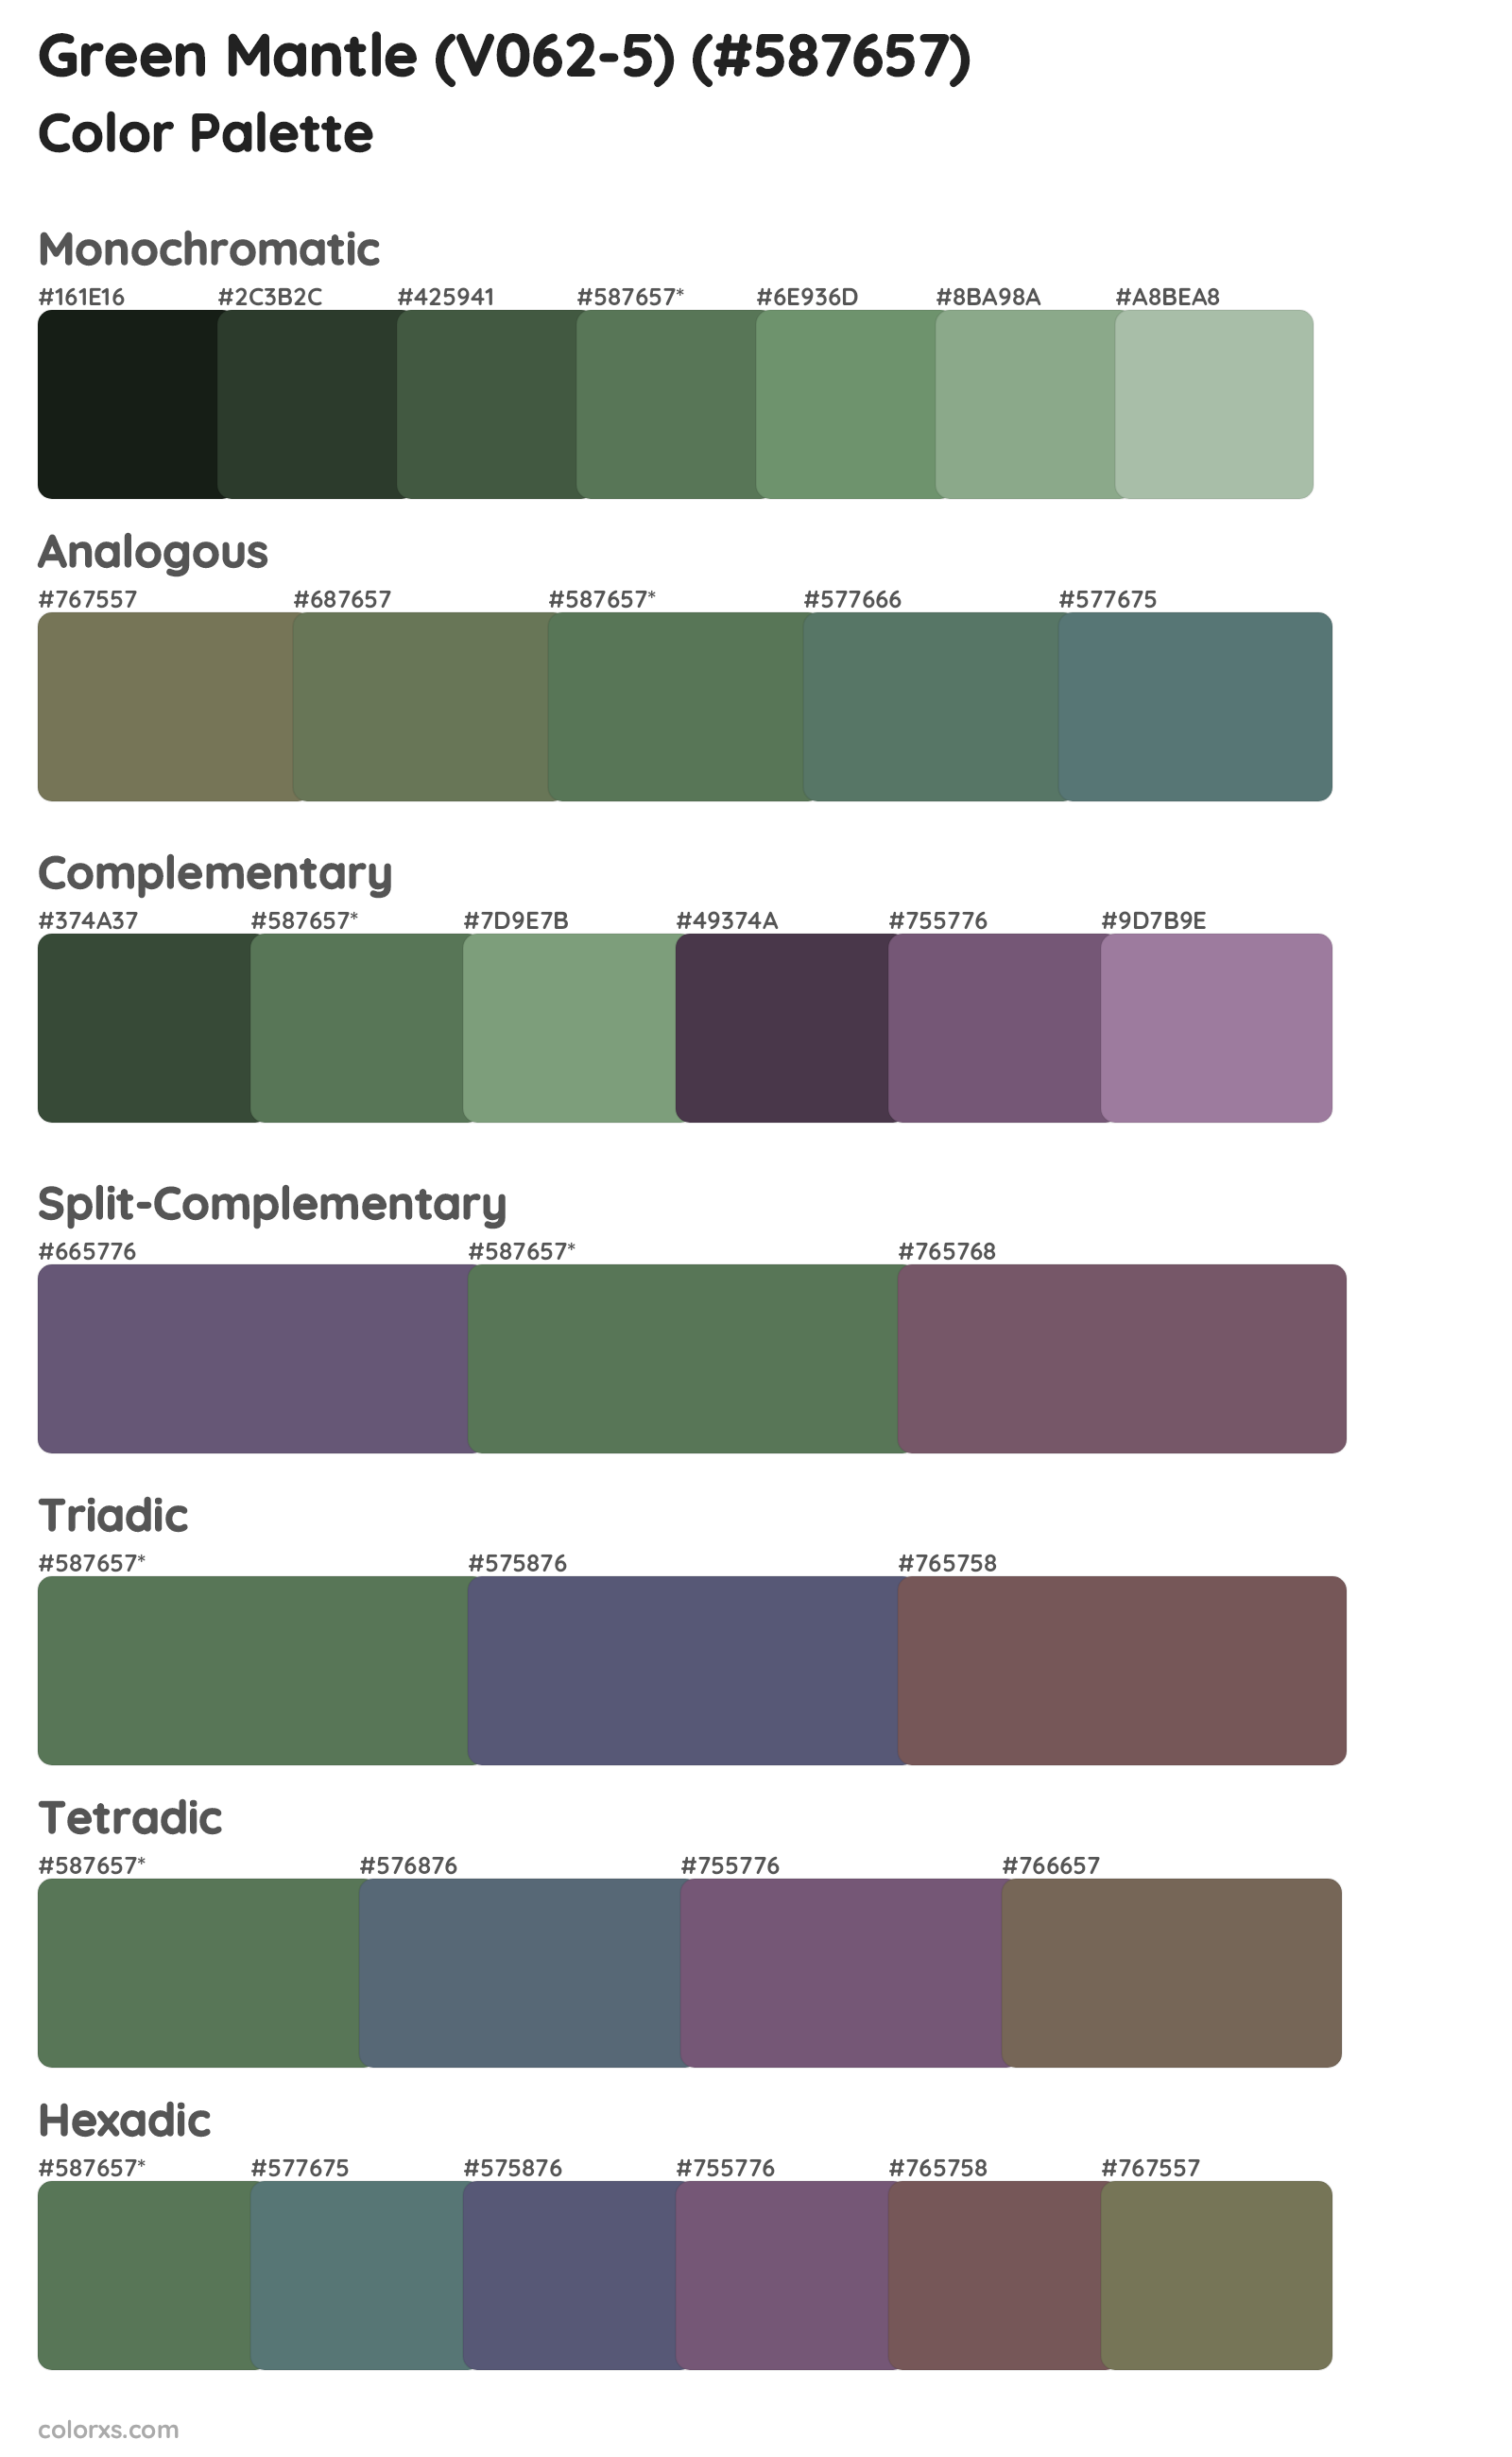 Green Mantle (V062-5) Color Scheme Palettes